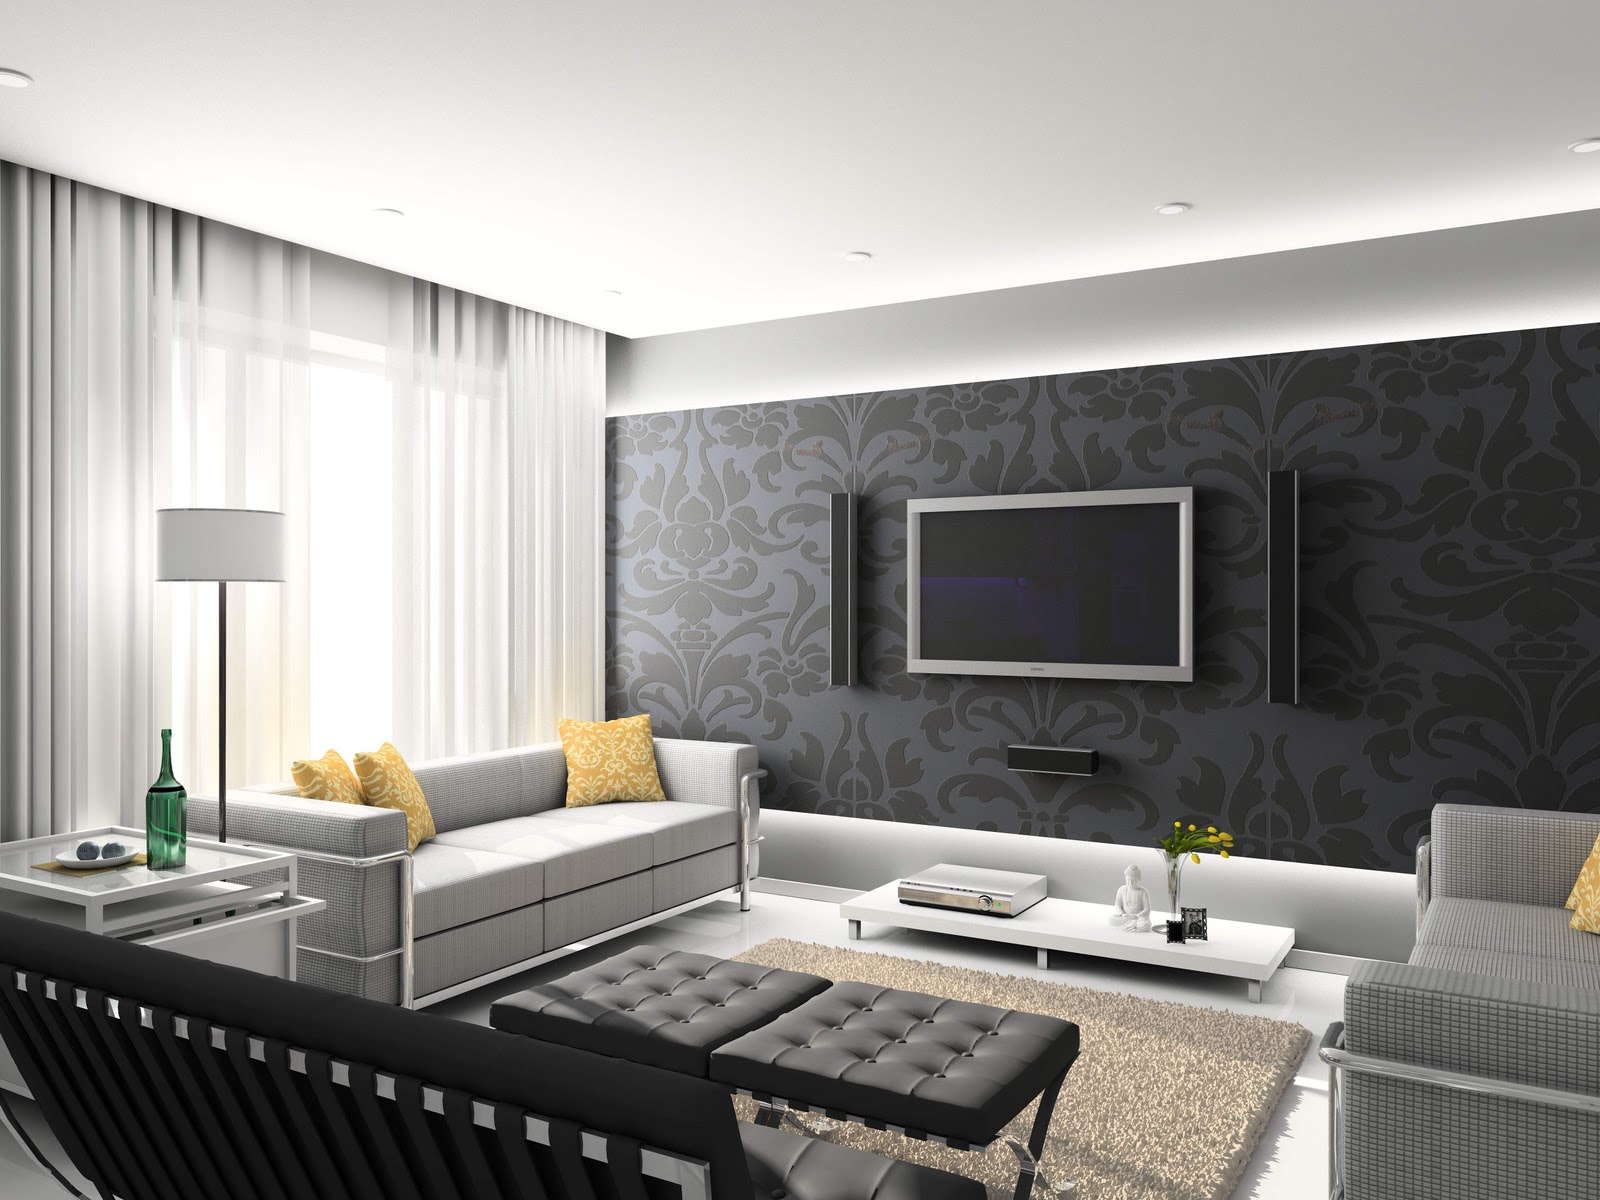 http://4.bp.blogspot.com/-STYnWSxFhHA/TZtwZv1NbHI/AAAAAAAAAvk/BB9iKivReCY/s1600/Modern-Living-Room-Home-Design-Ideas111.jpg